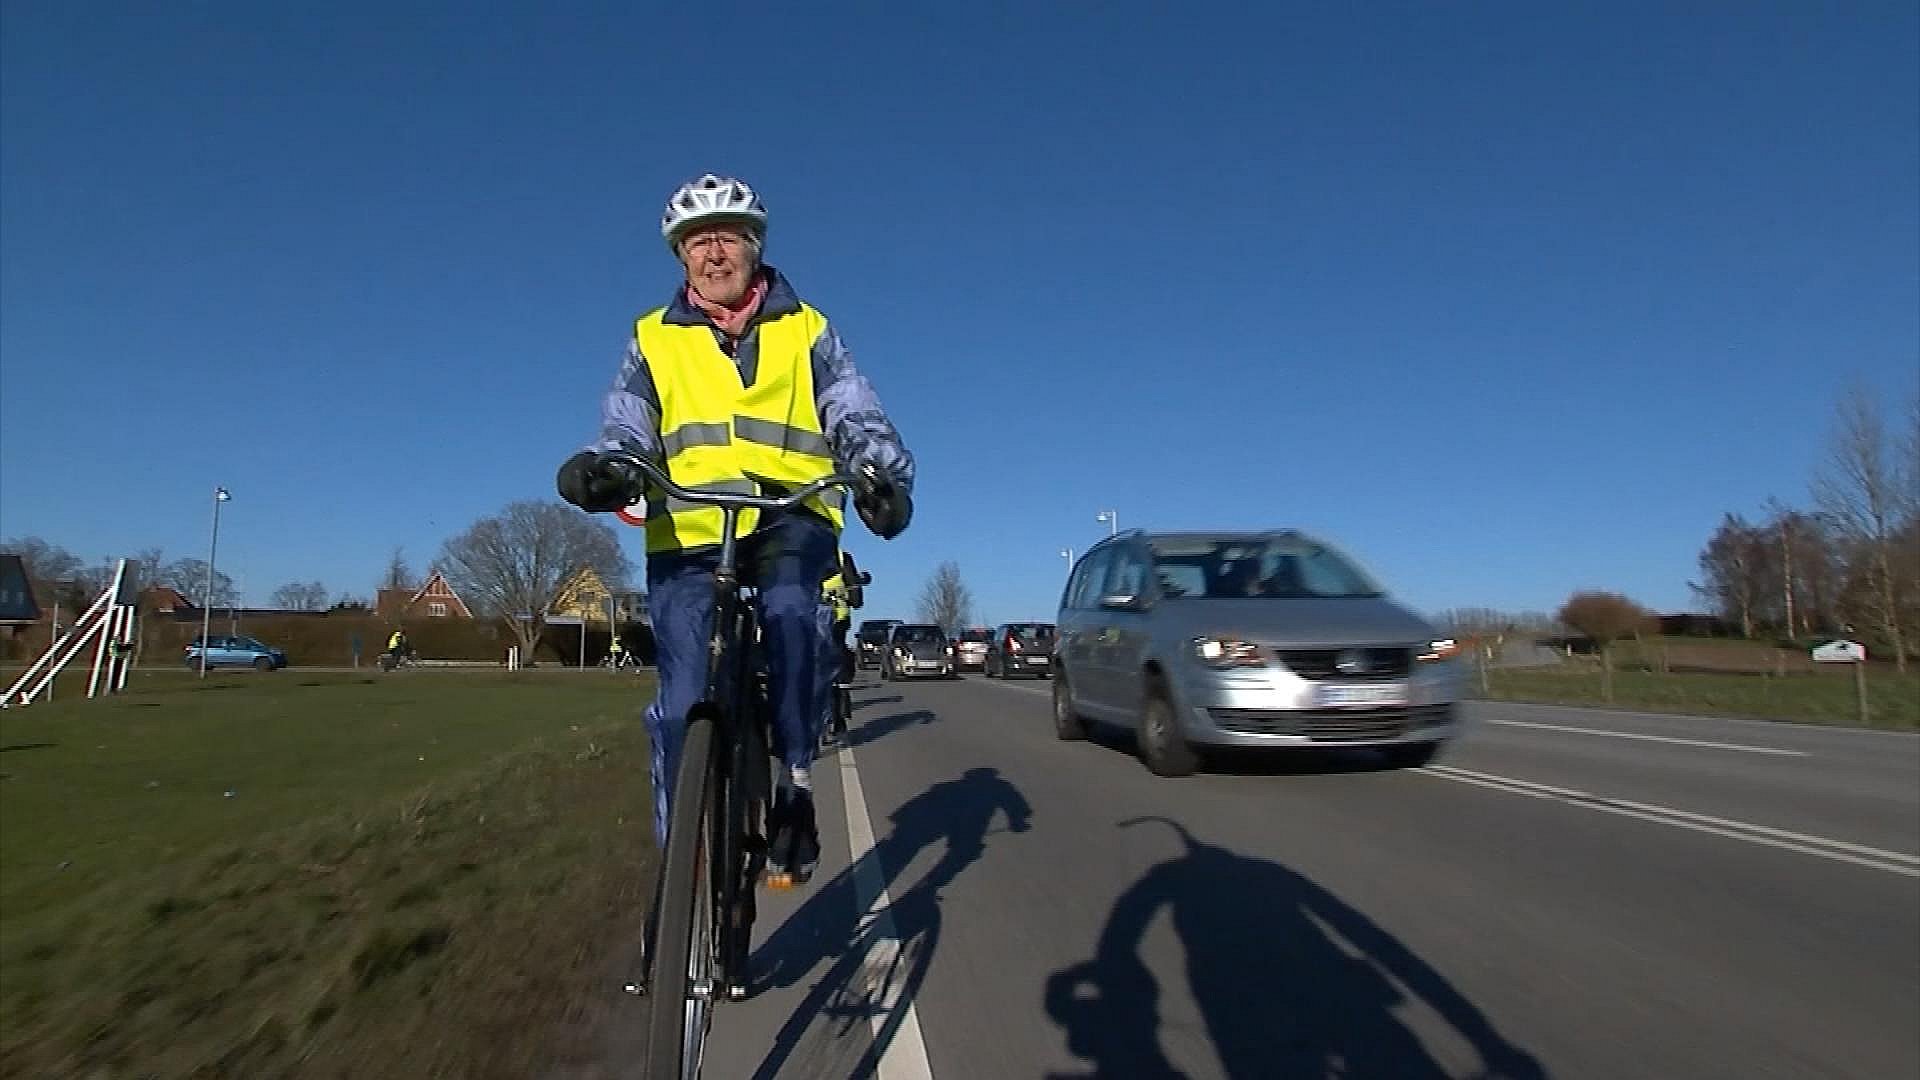 udgør Tåre Fredag 84-årig samler 3.000 underskrifter for bedre cykelstier | TV2 ØST